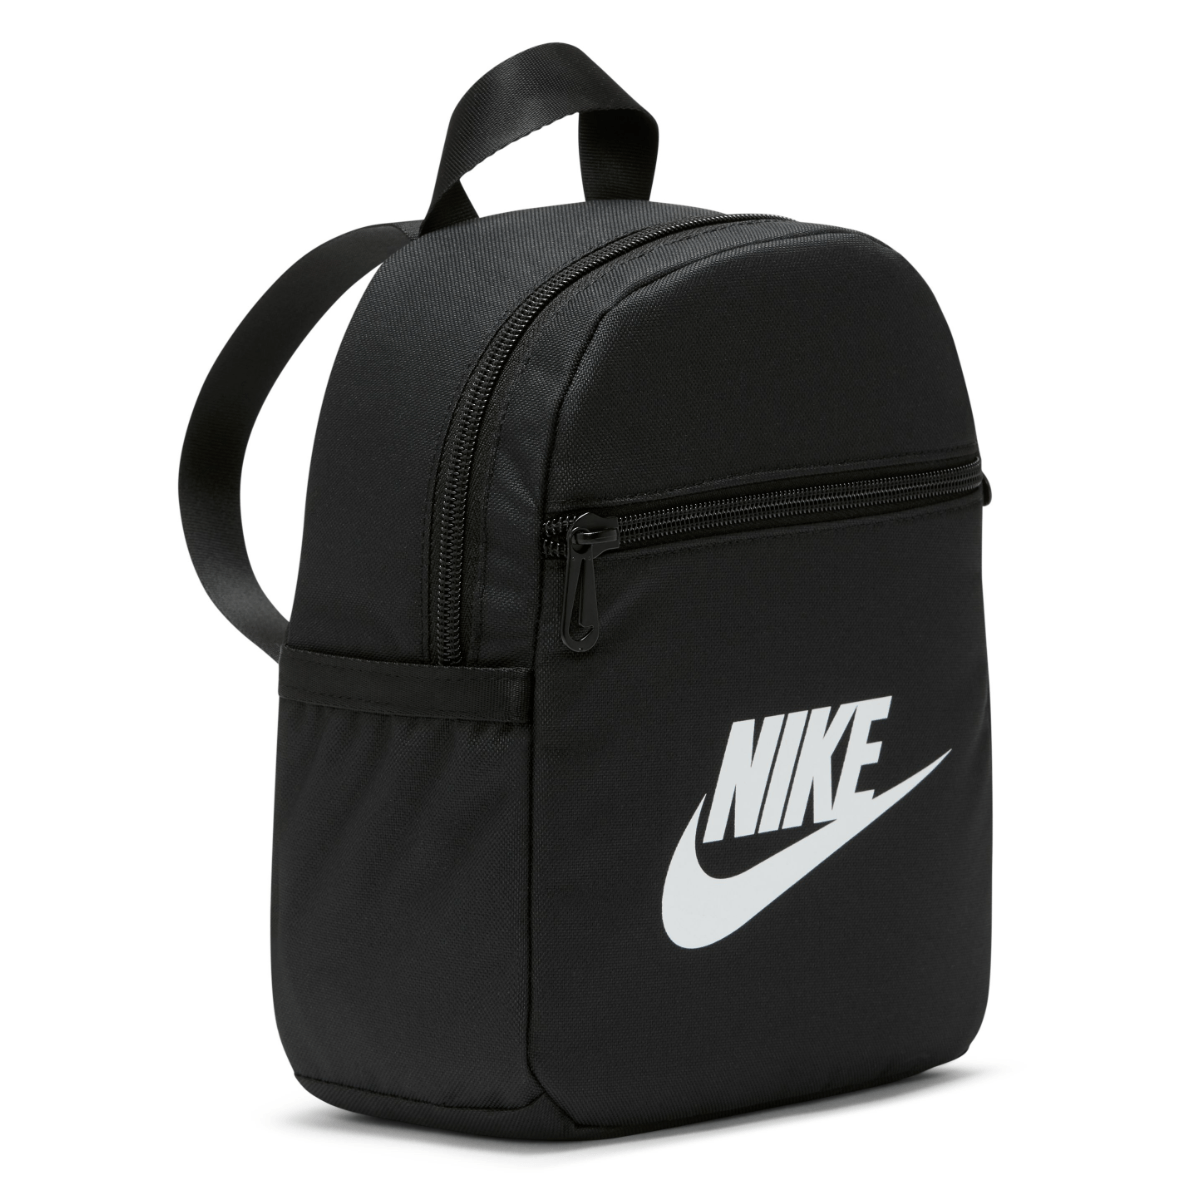 Nike Futura 365 Mini Backpack